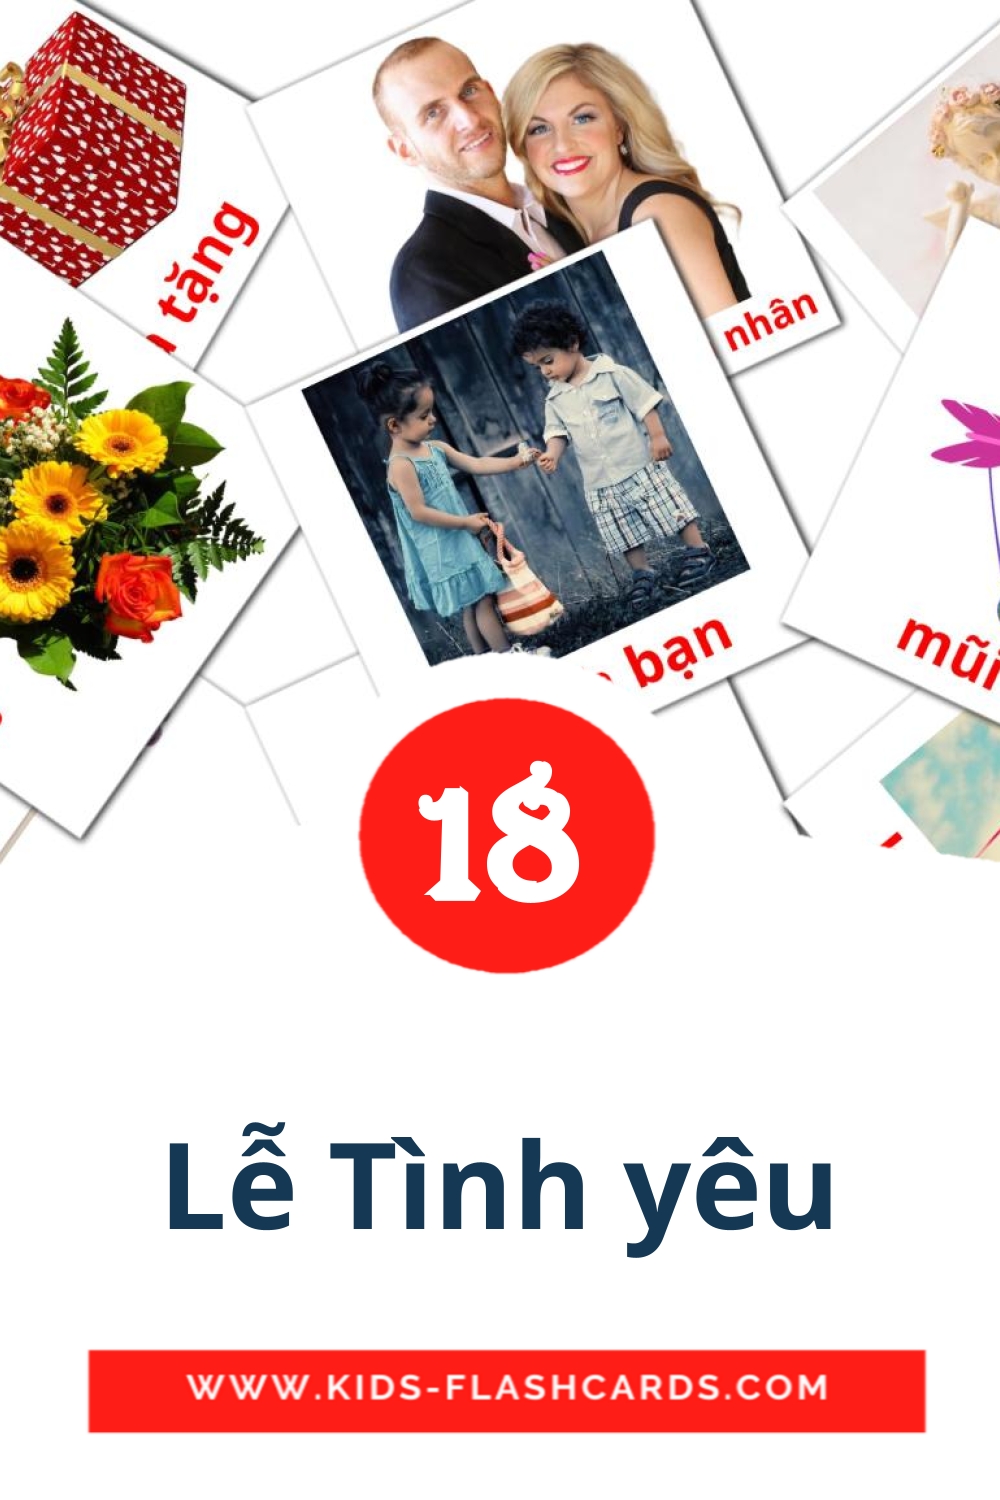 18 Cartões com Imagens de Lễ Tình yêu para Jardim de Infância em vietnamita